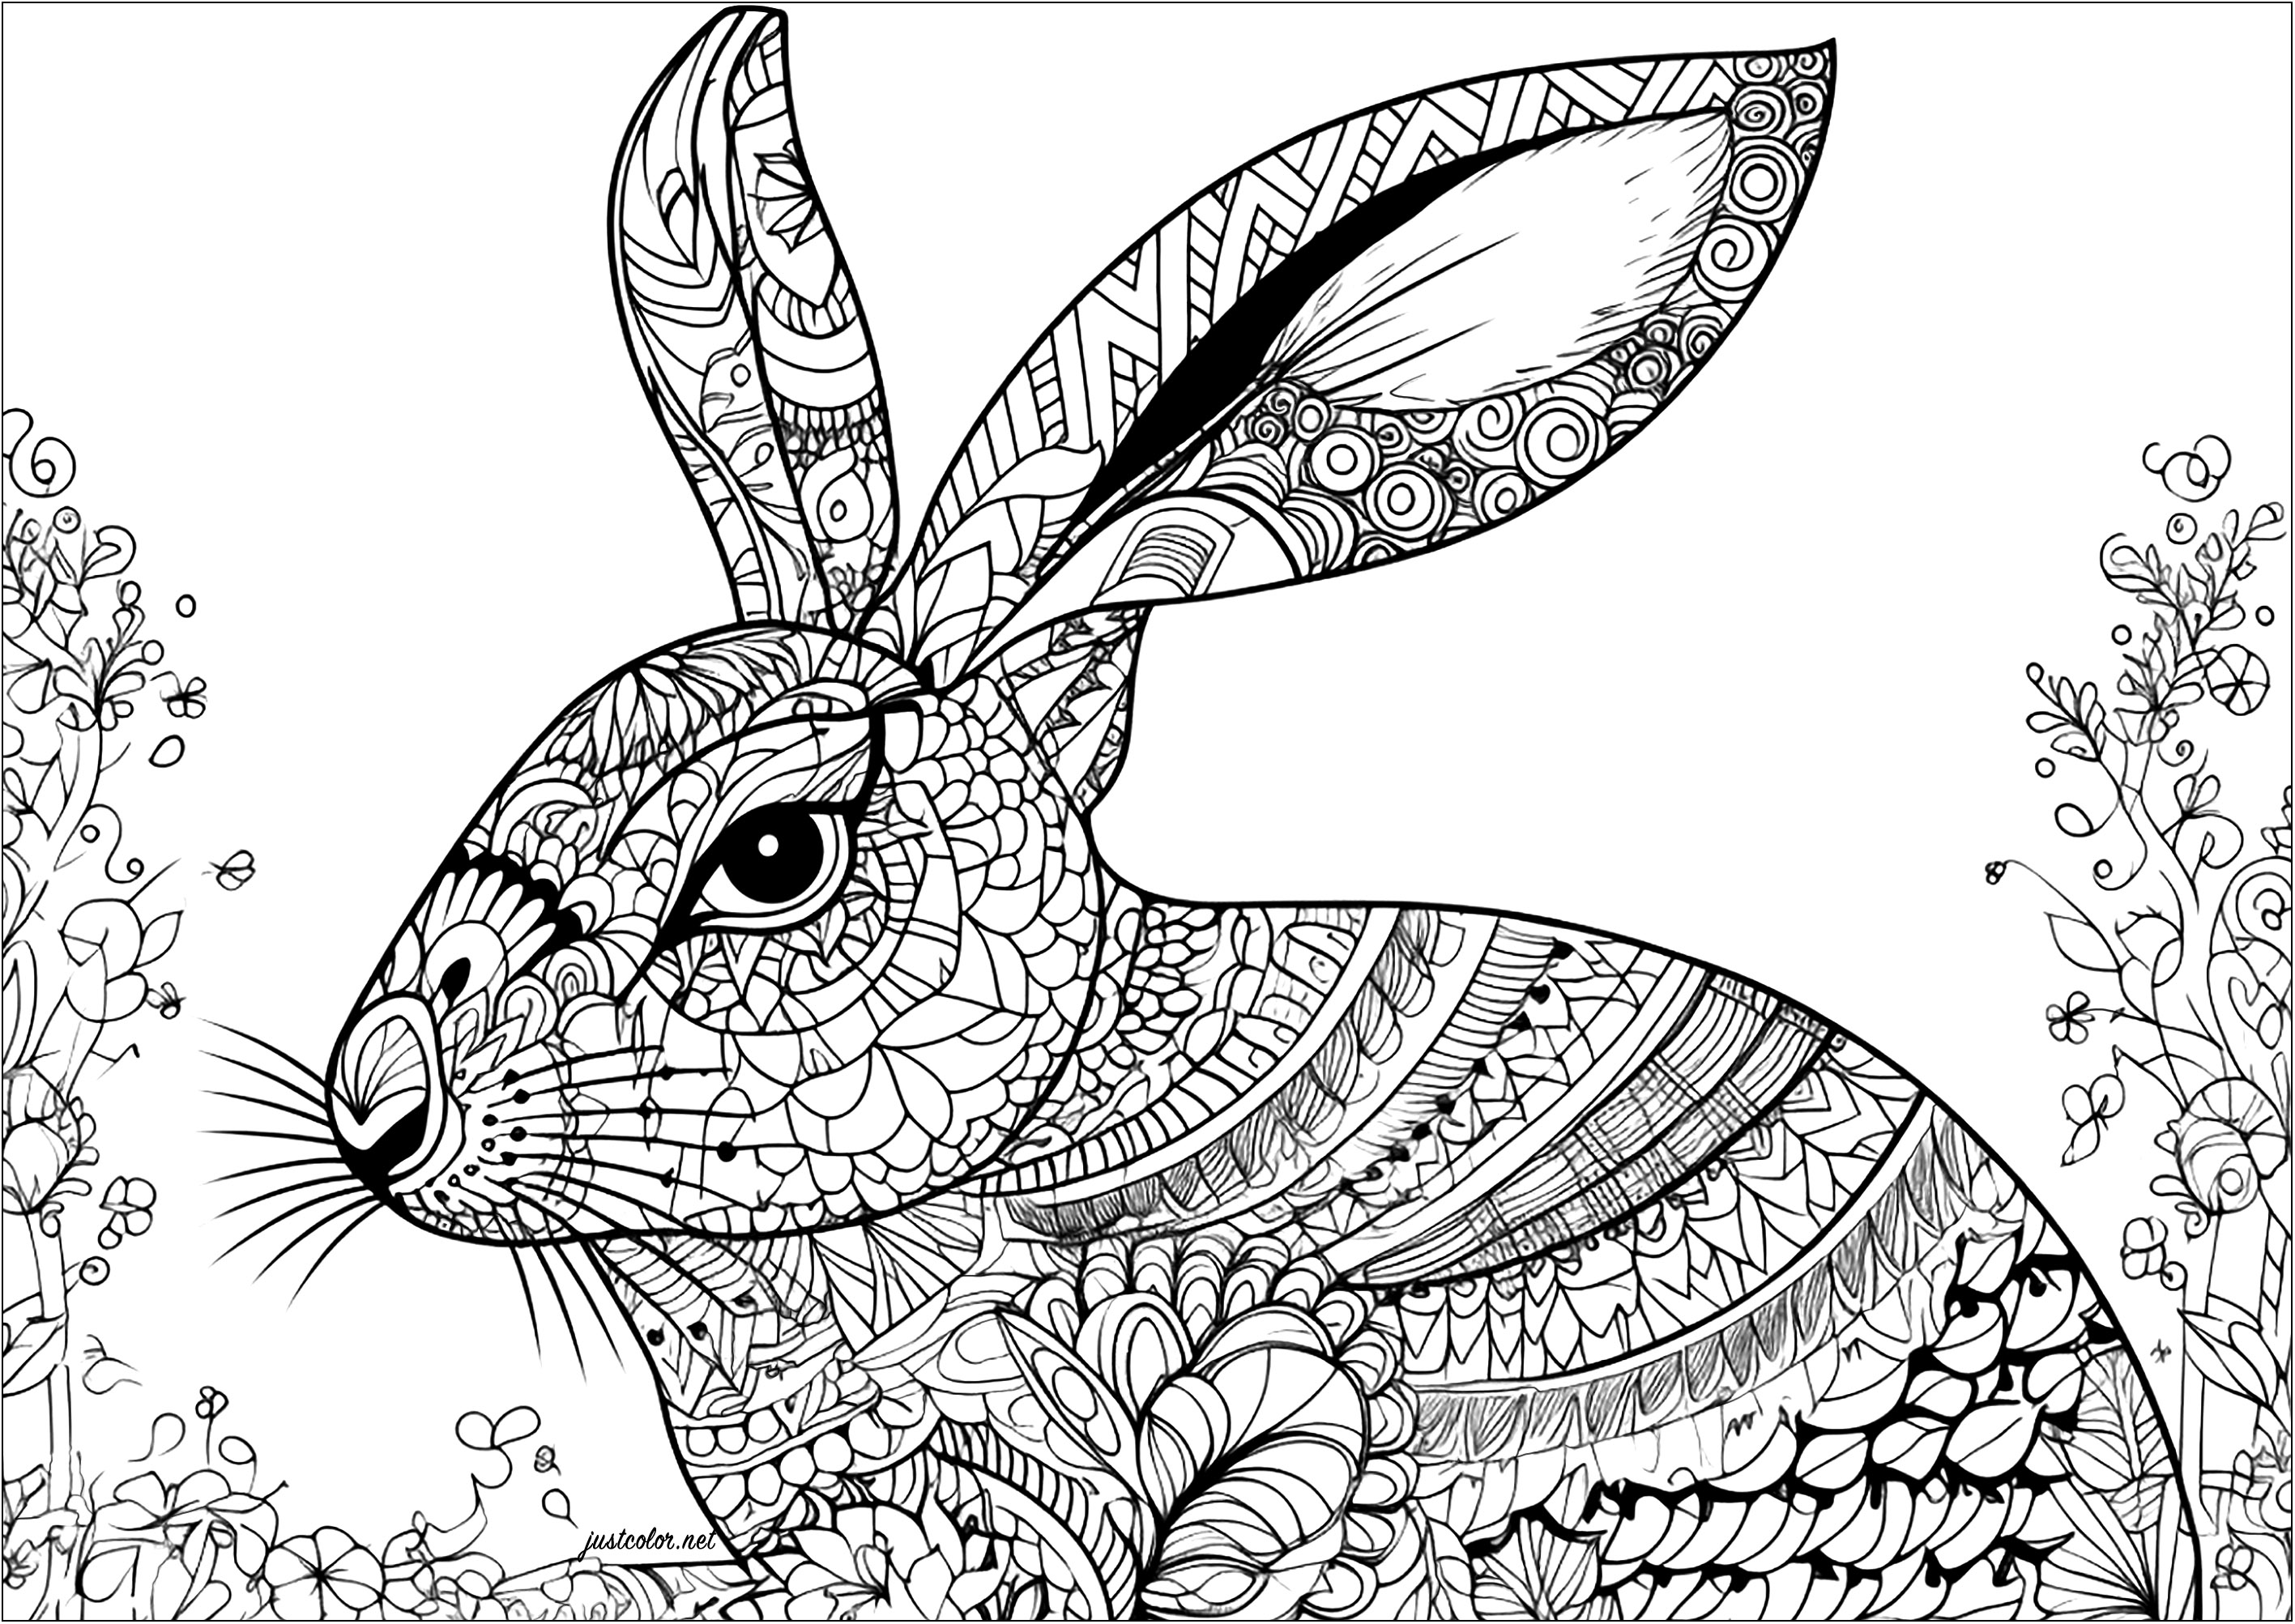 Coniglio e modelli complessi. Un bellissimo coniglio da colorare con disegni intricati e diversi. Questo libro da colorare richiederà molto tempo per essere completato, ma è sicuro che vi porterà una tranquillità ottimale.